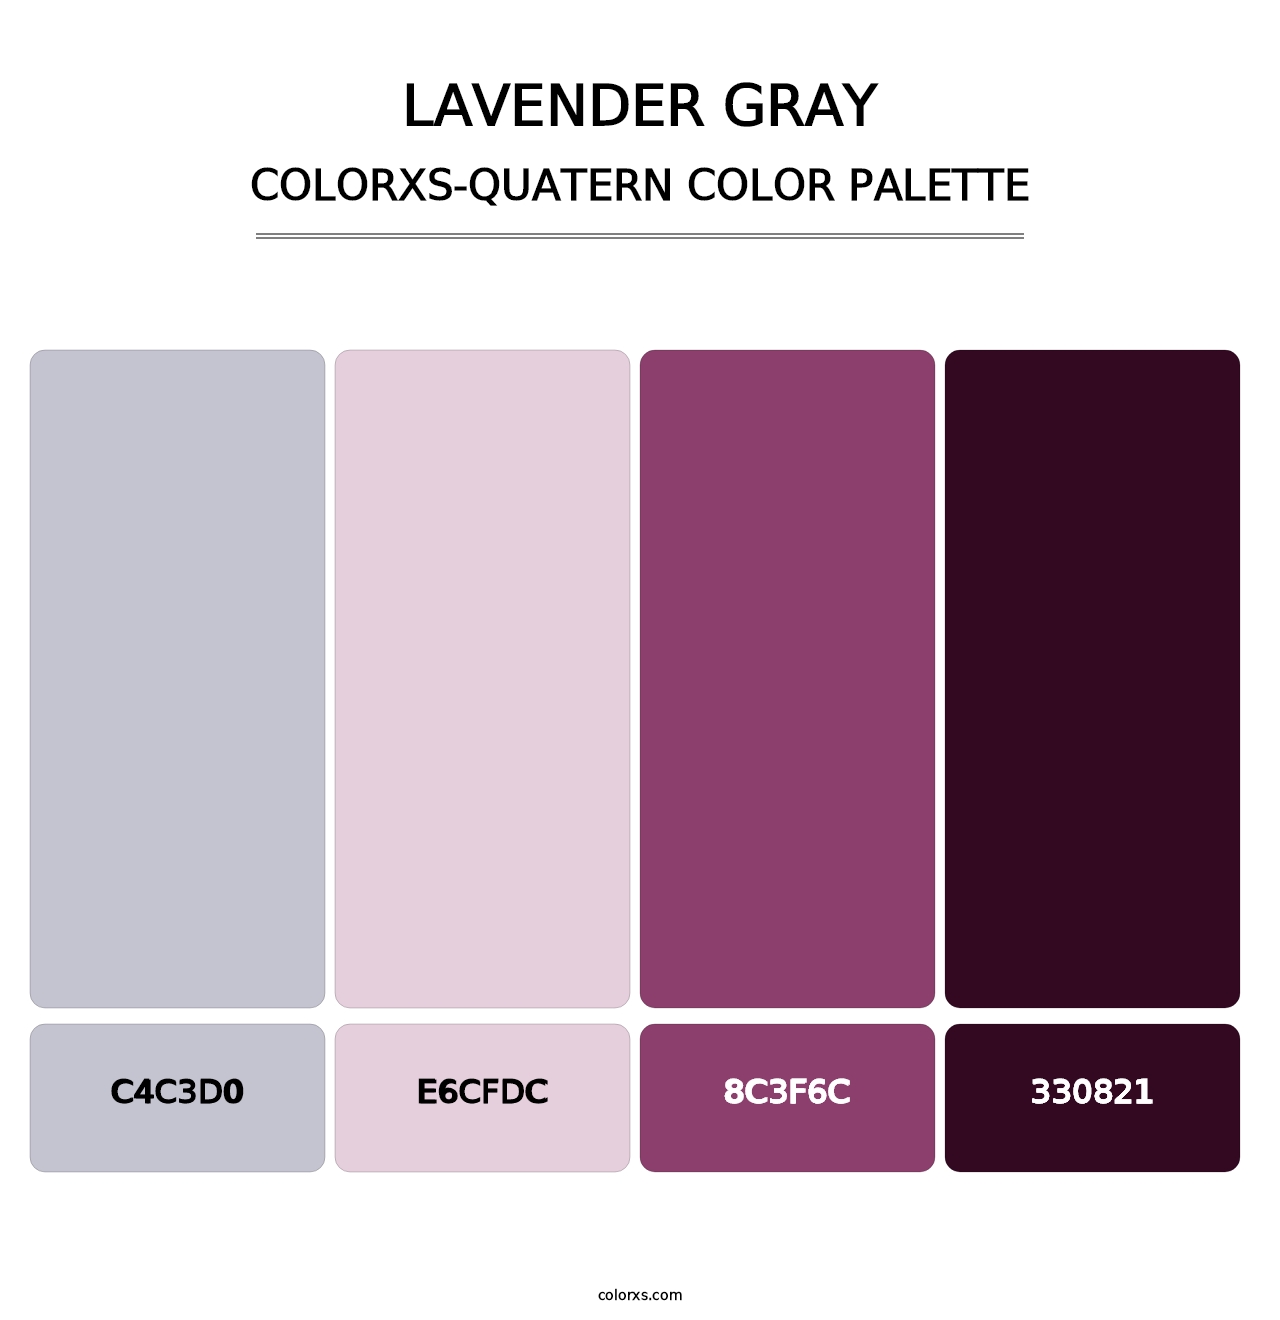 Lavender Gray - Colorxs Quatern Palette